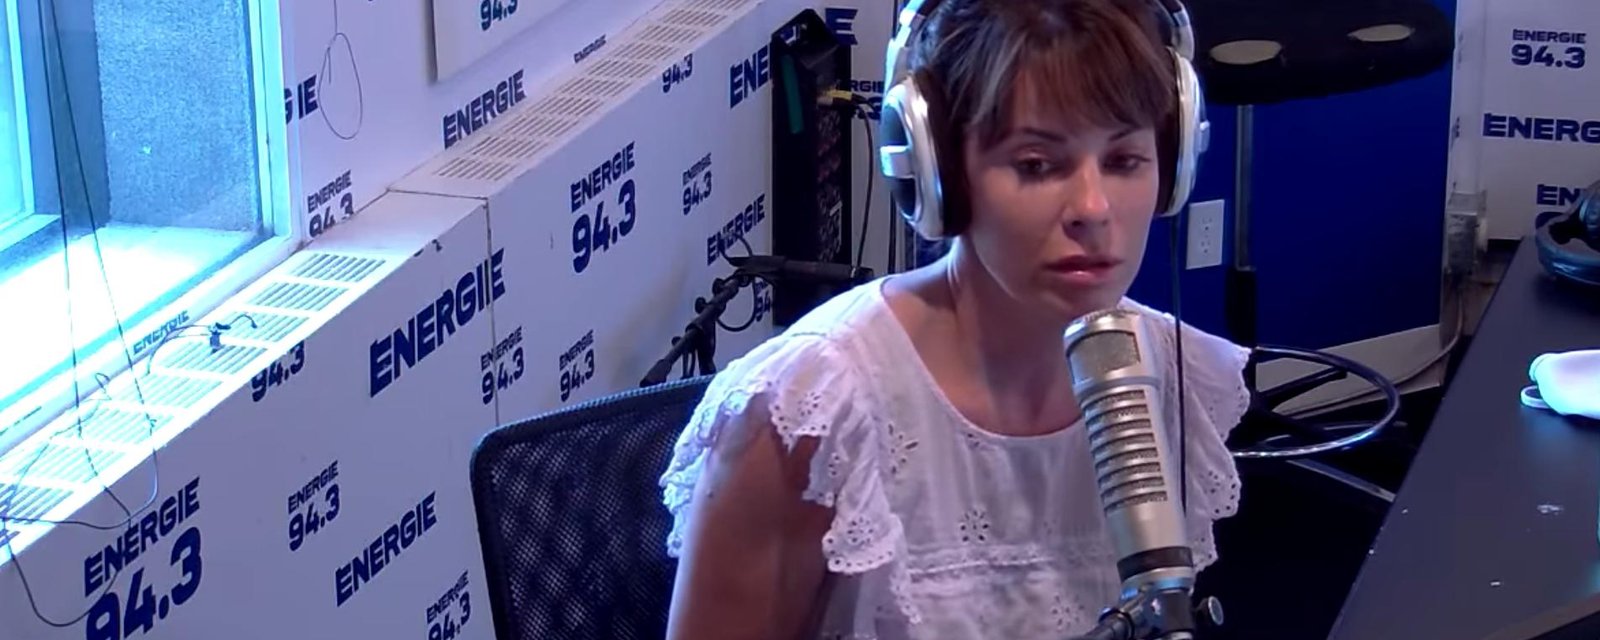 Marie-Claude Savard crée un immense malaise en direct à la radio avec Christine Morency